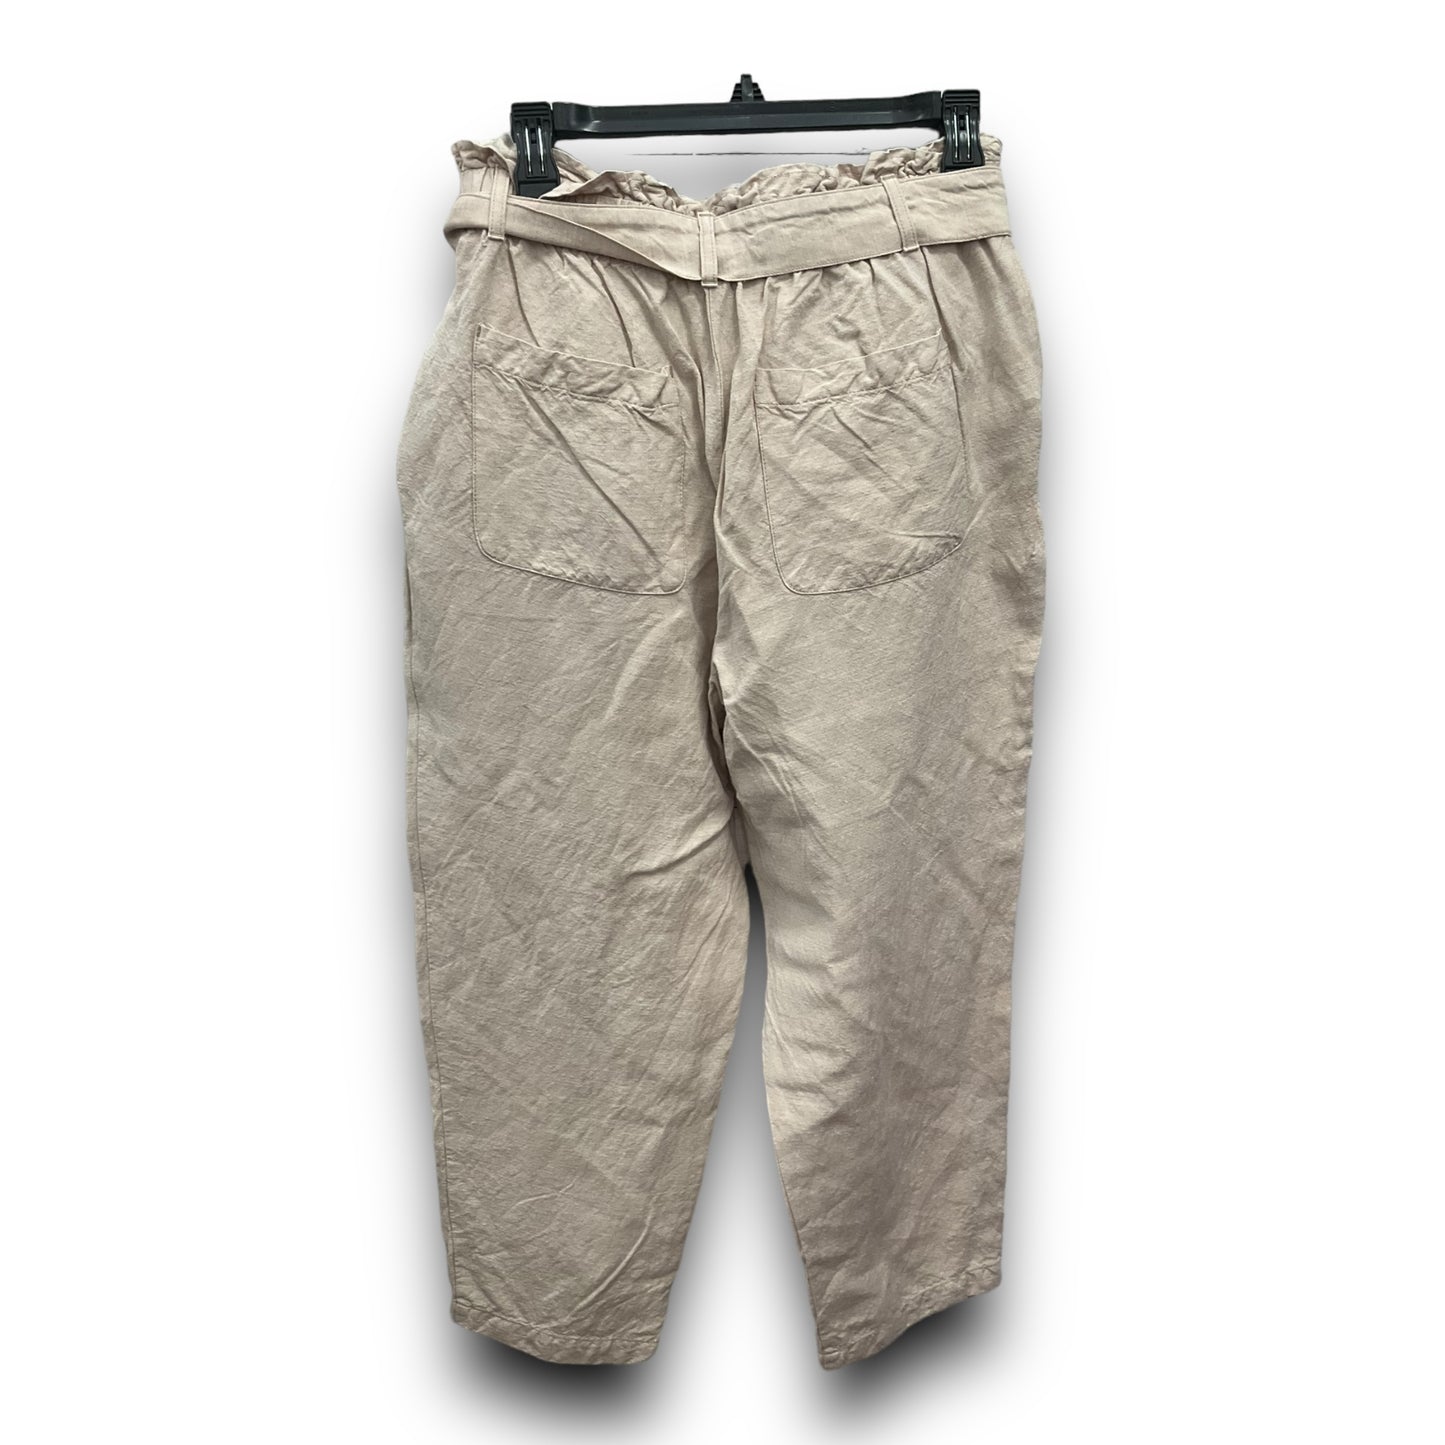 Pants Linen By Loft  Size: M